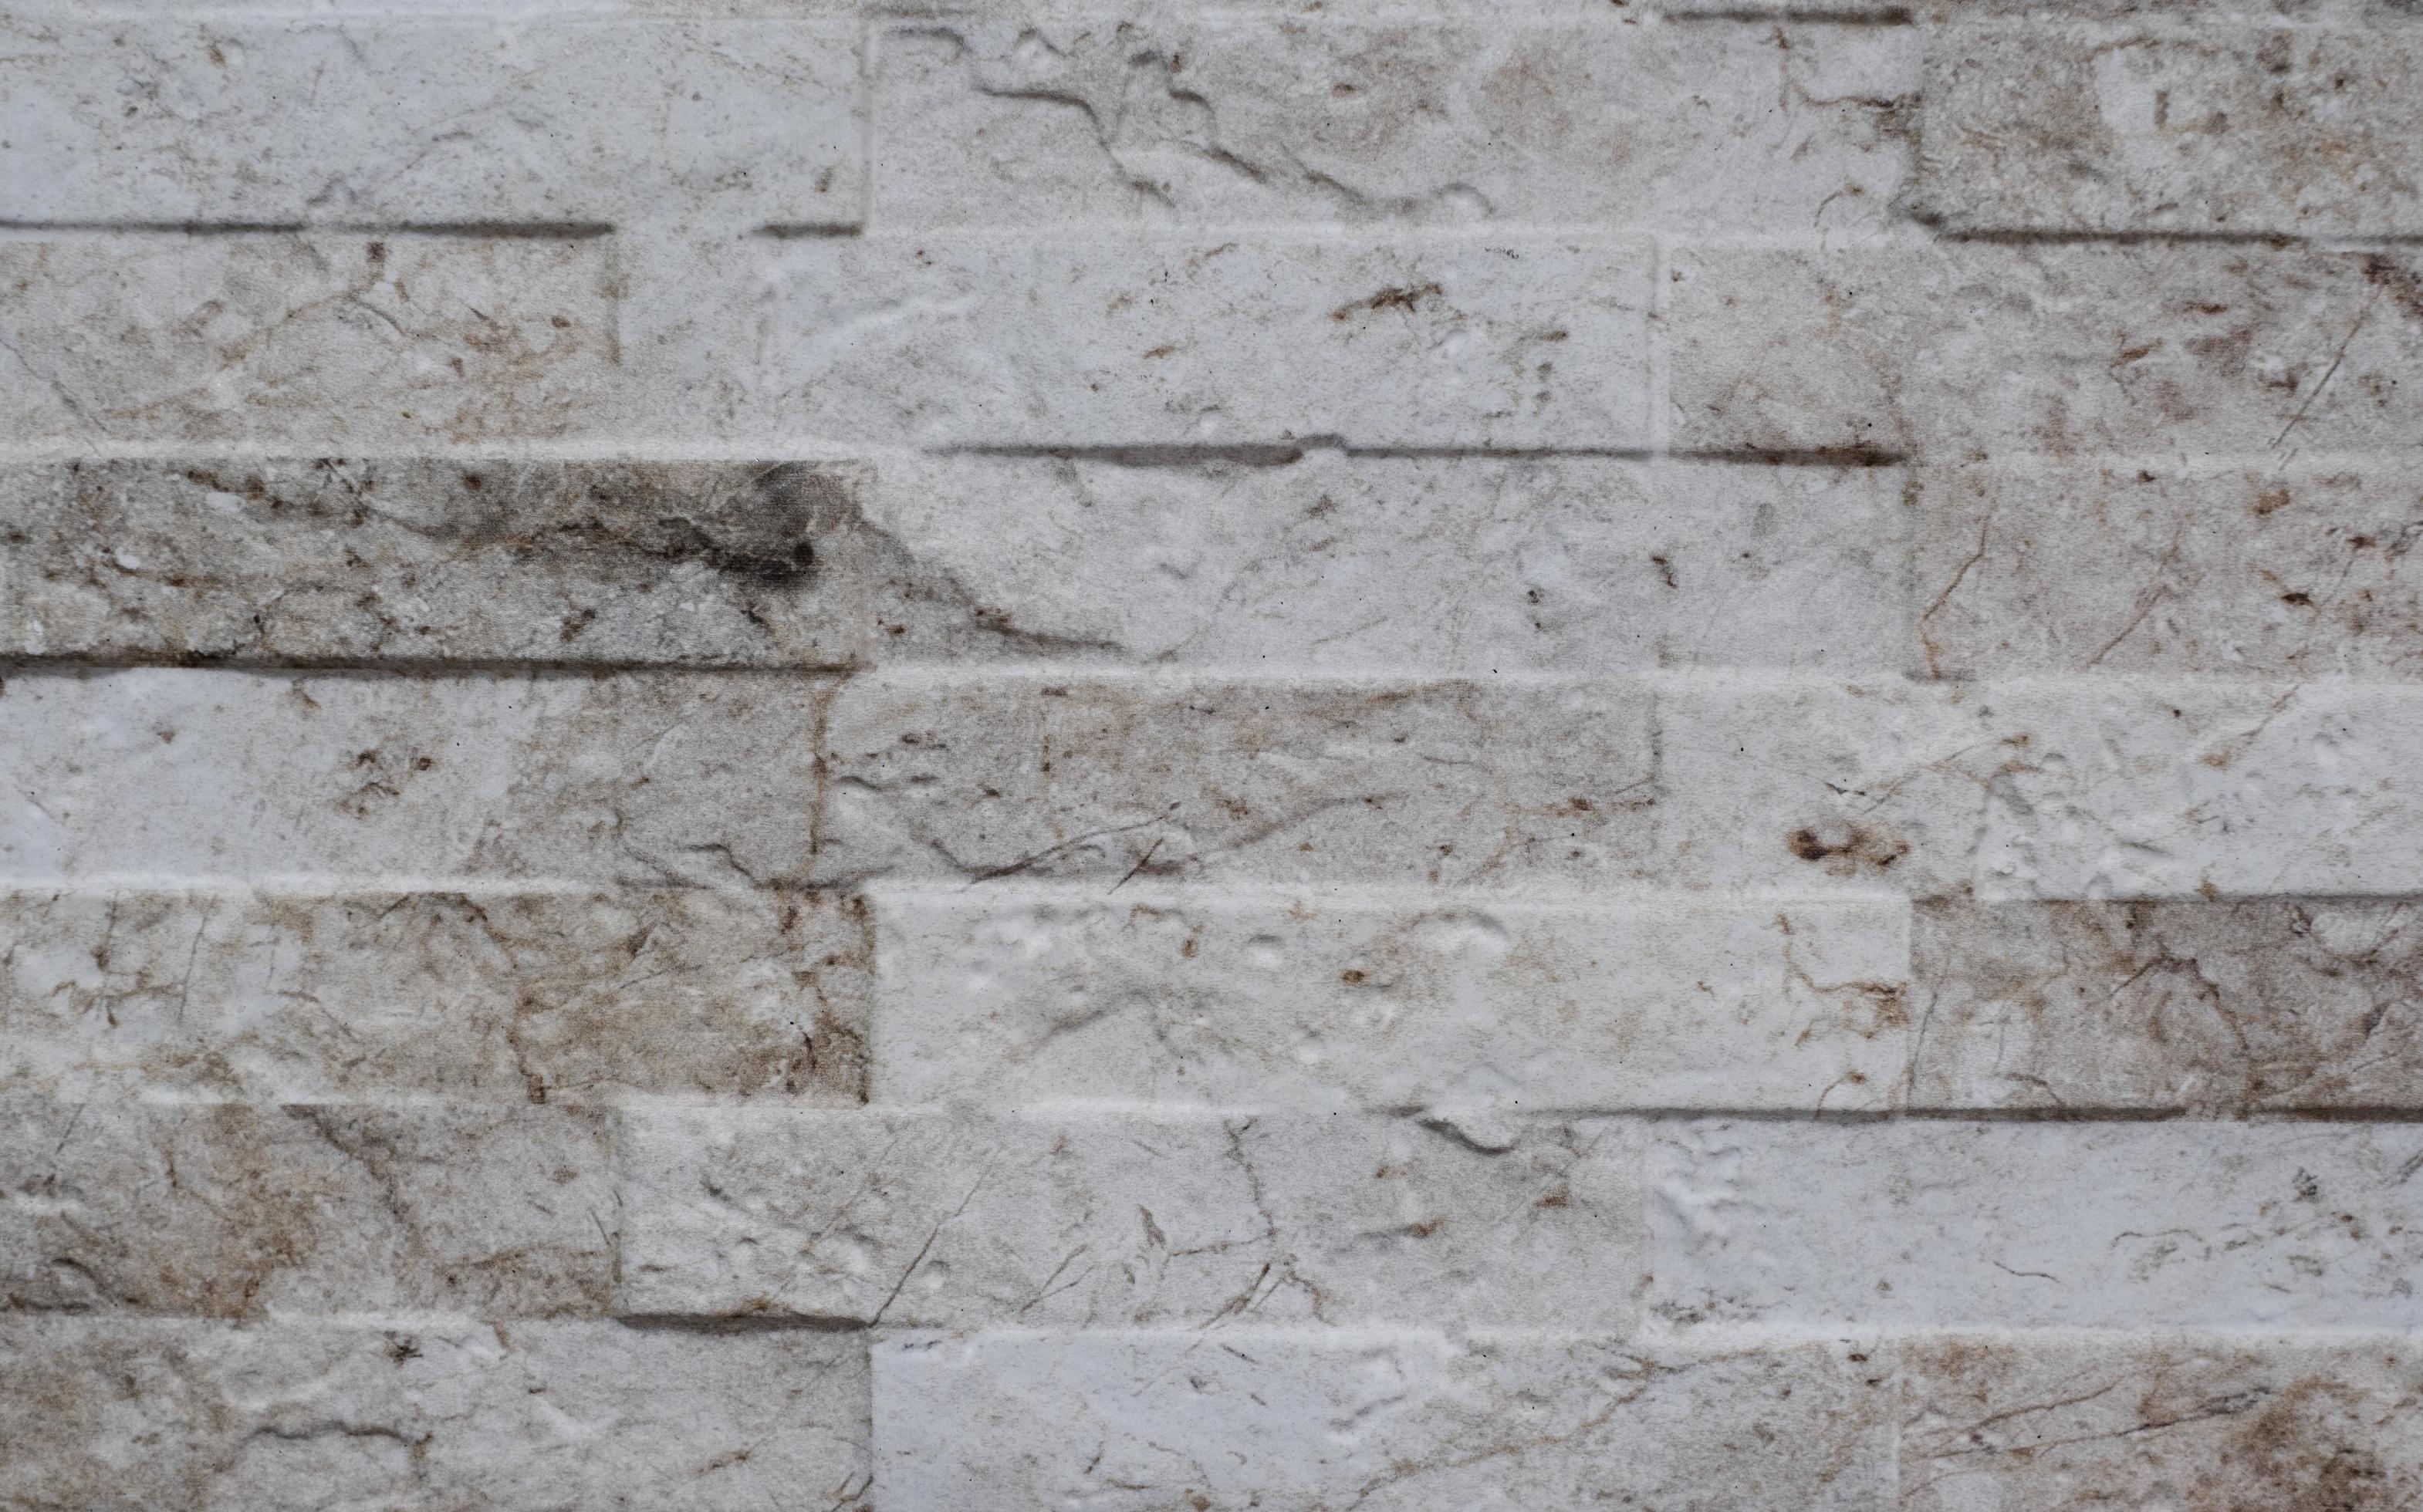 Bekend hypotheek doel natuurlijke gevel steen decoratie kwartsiet achtergrondstructuur. moderne  granieten stenen muur 2256028 stockfoto bij Vecteezy